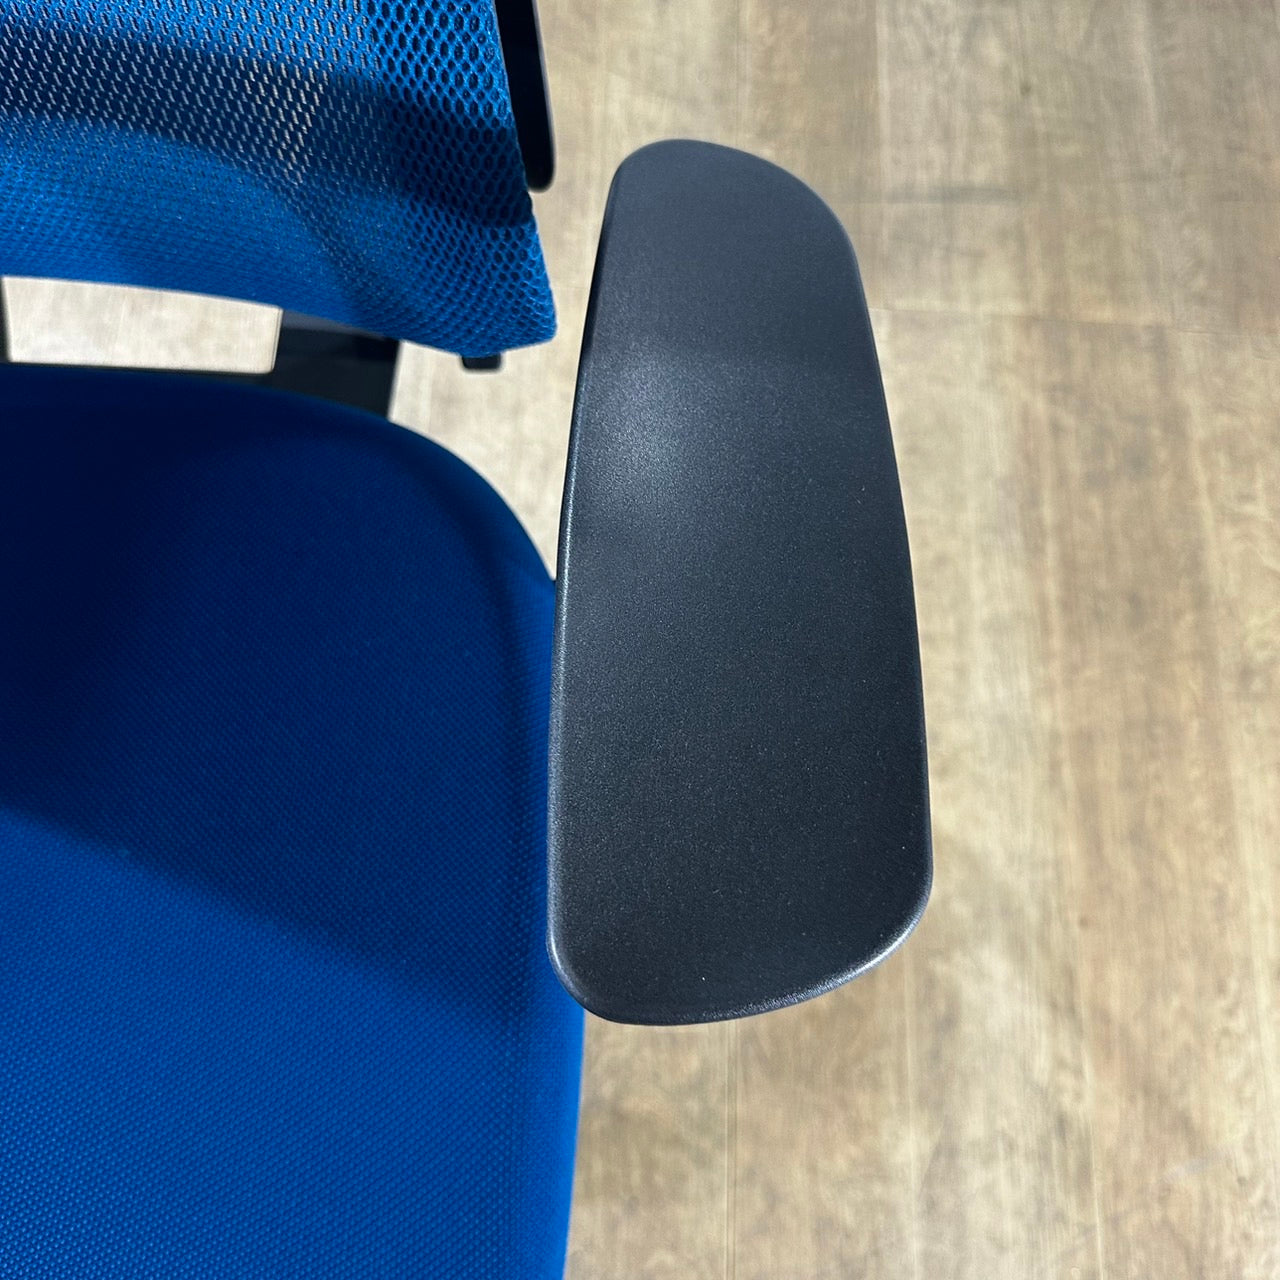 【送料無料】コクヨ デュオラ 固定肘 ハイタイプ ハイチェア 2020製 ブルー